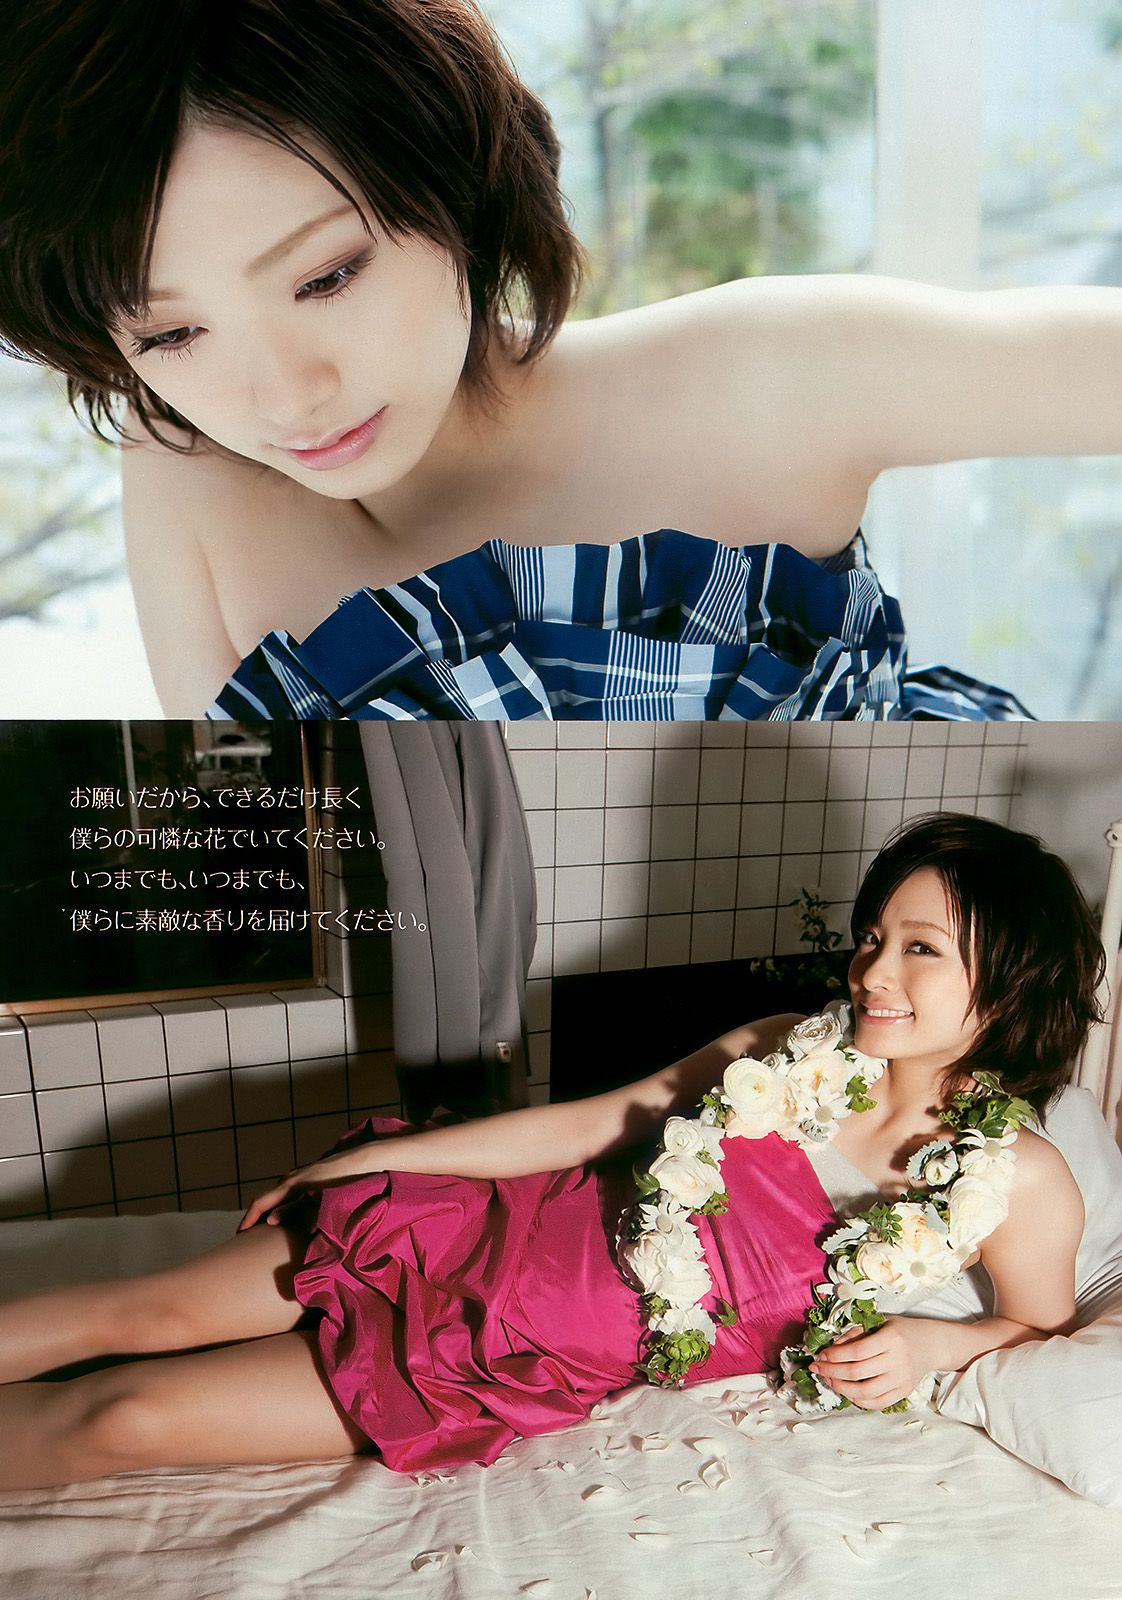 Aya Uedo, Aizawa, Kafei, AKB48 Shiraishi Miho, Goto Risa [Wöchentlicher Playboy] 2010 Nr. 19-20 Fotomagazin Seite 28 No.4f5d1b